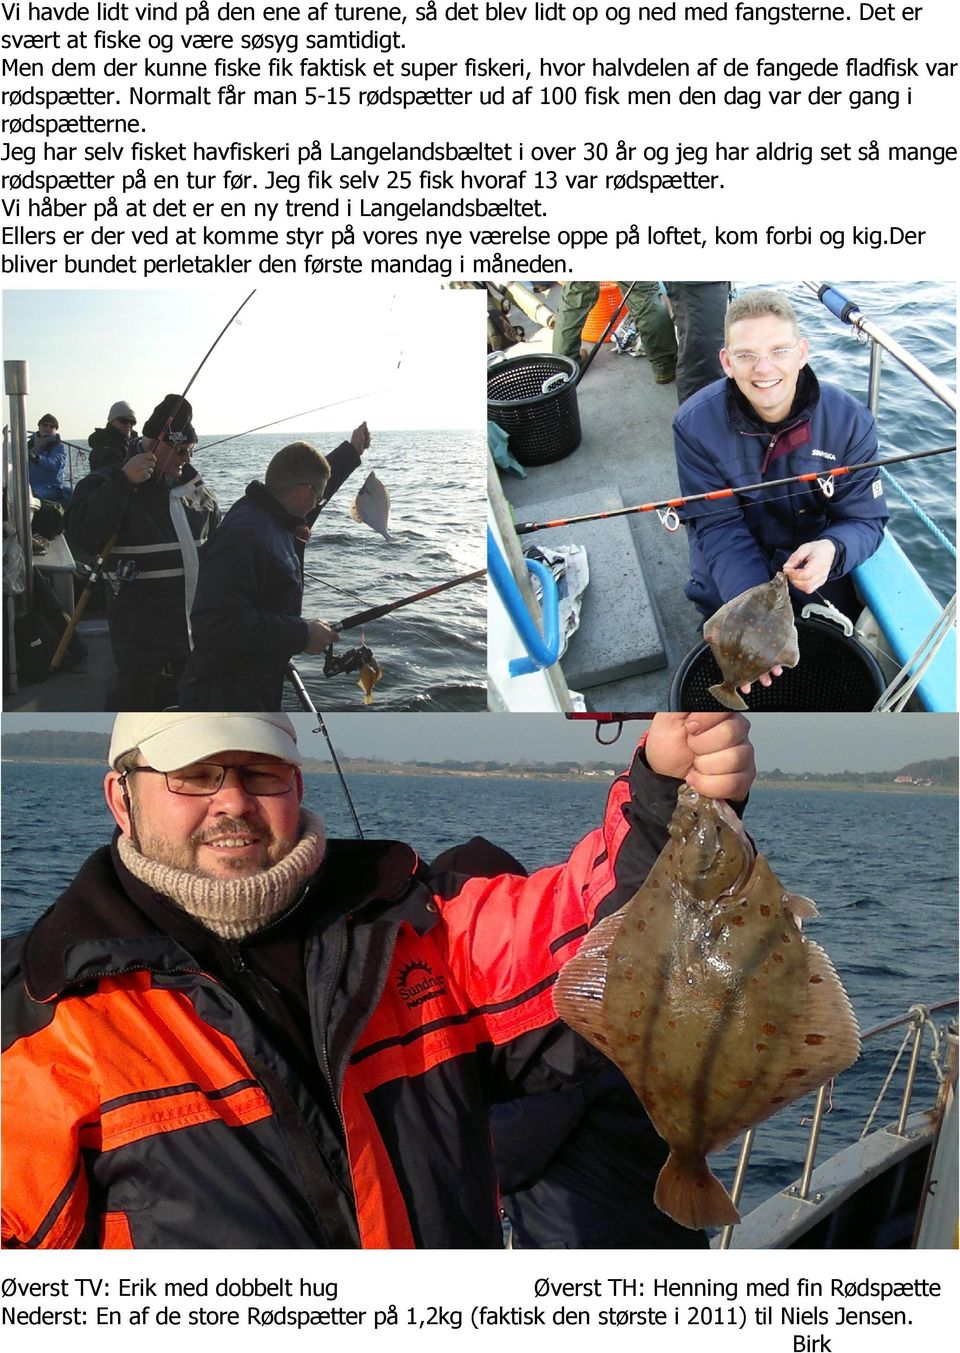 Jeg har selv fisket havfiskeri på Langelandsbæltet i over 30 år og jeg har aldrig set så mange rødspætter på en tur før. Jeg fik selv 25 fisk hvoraf 13 var rødspætter.